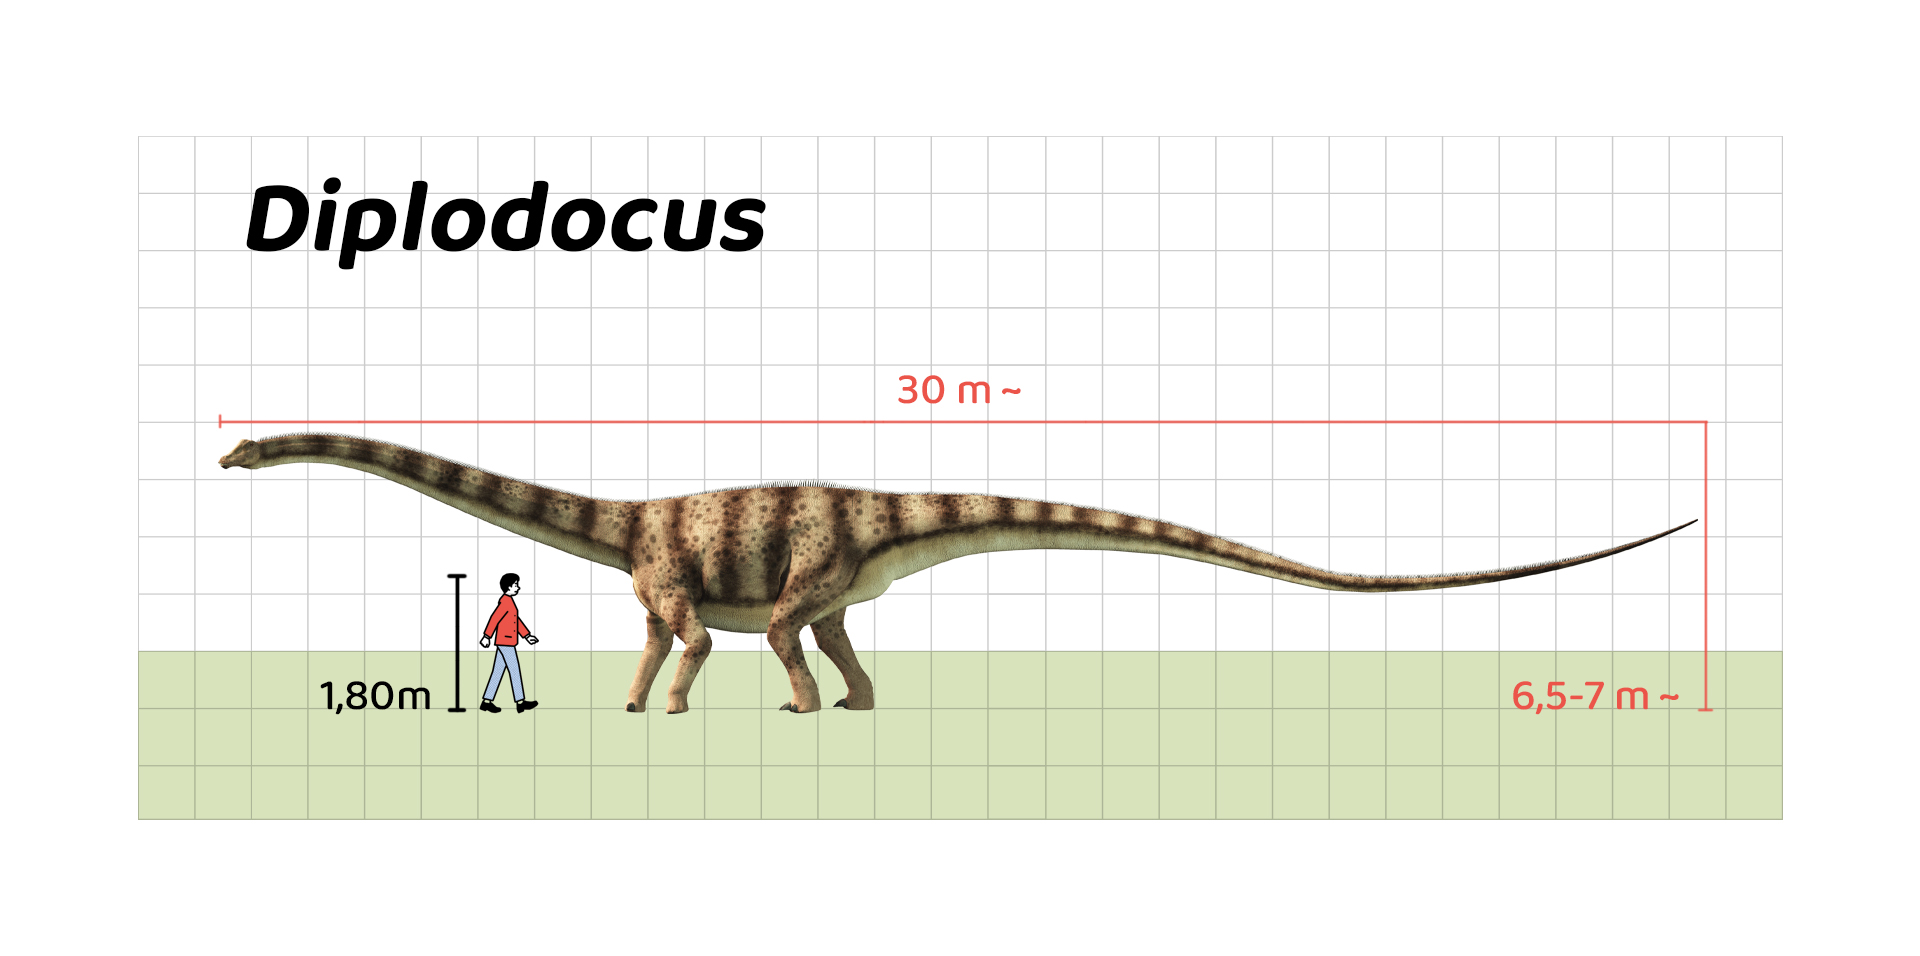 İnsan boyu ile Diplodocus’un büyüklüğünün karşılaştırılması